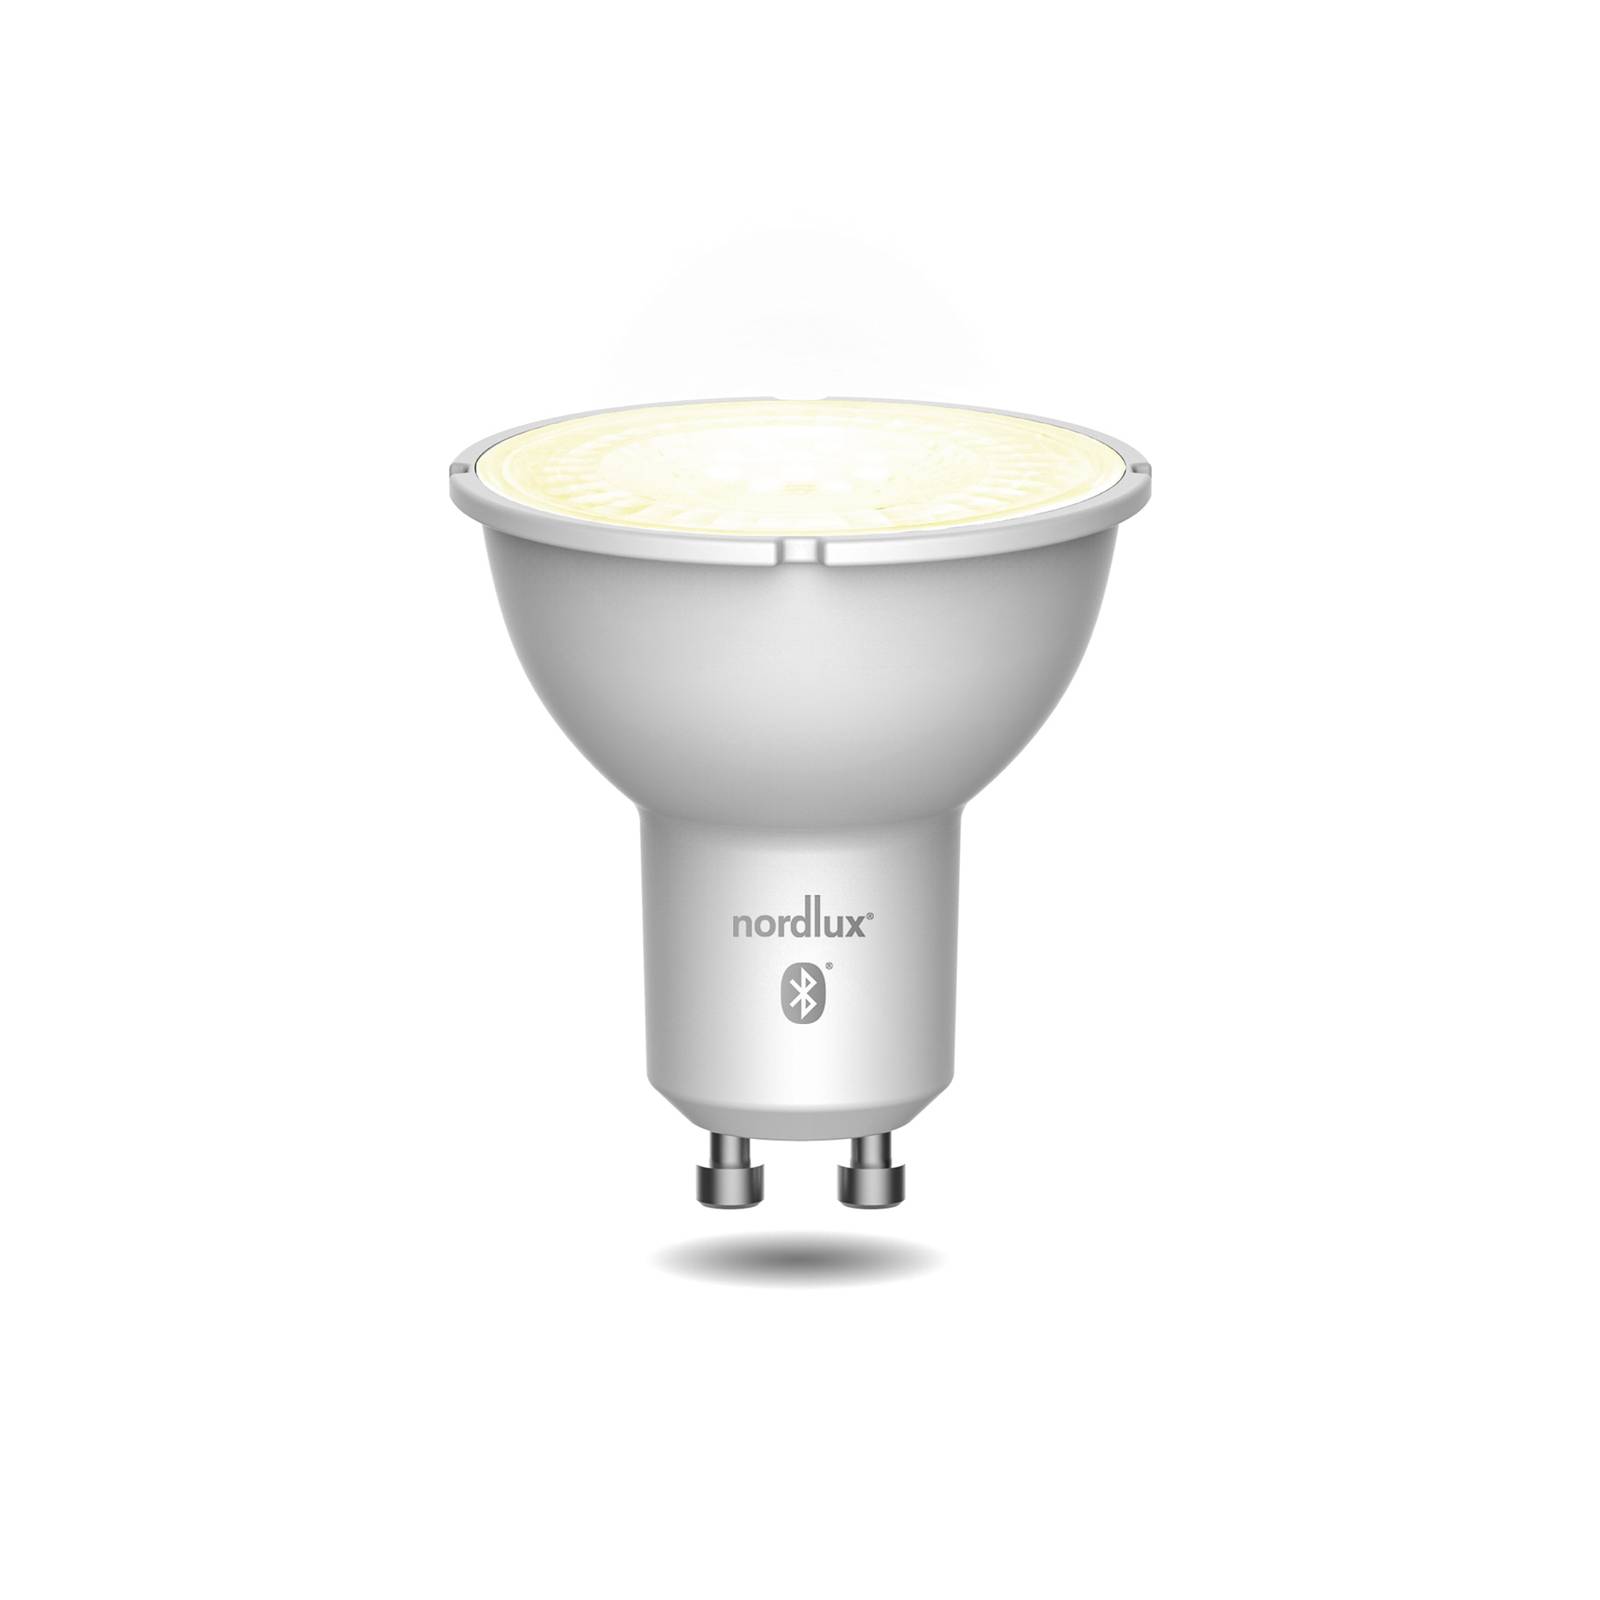 Nordlux LED-Reflektor Smart GU10 4,8W CCT 420lm im 3er-Set